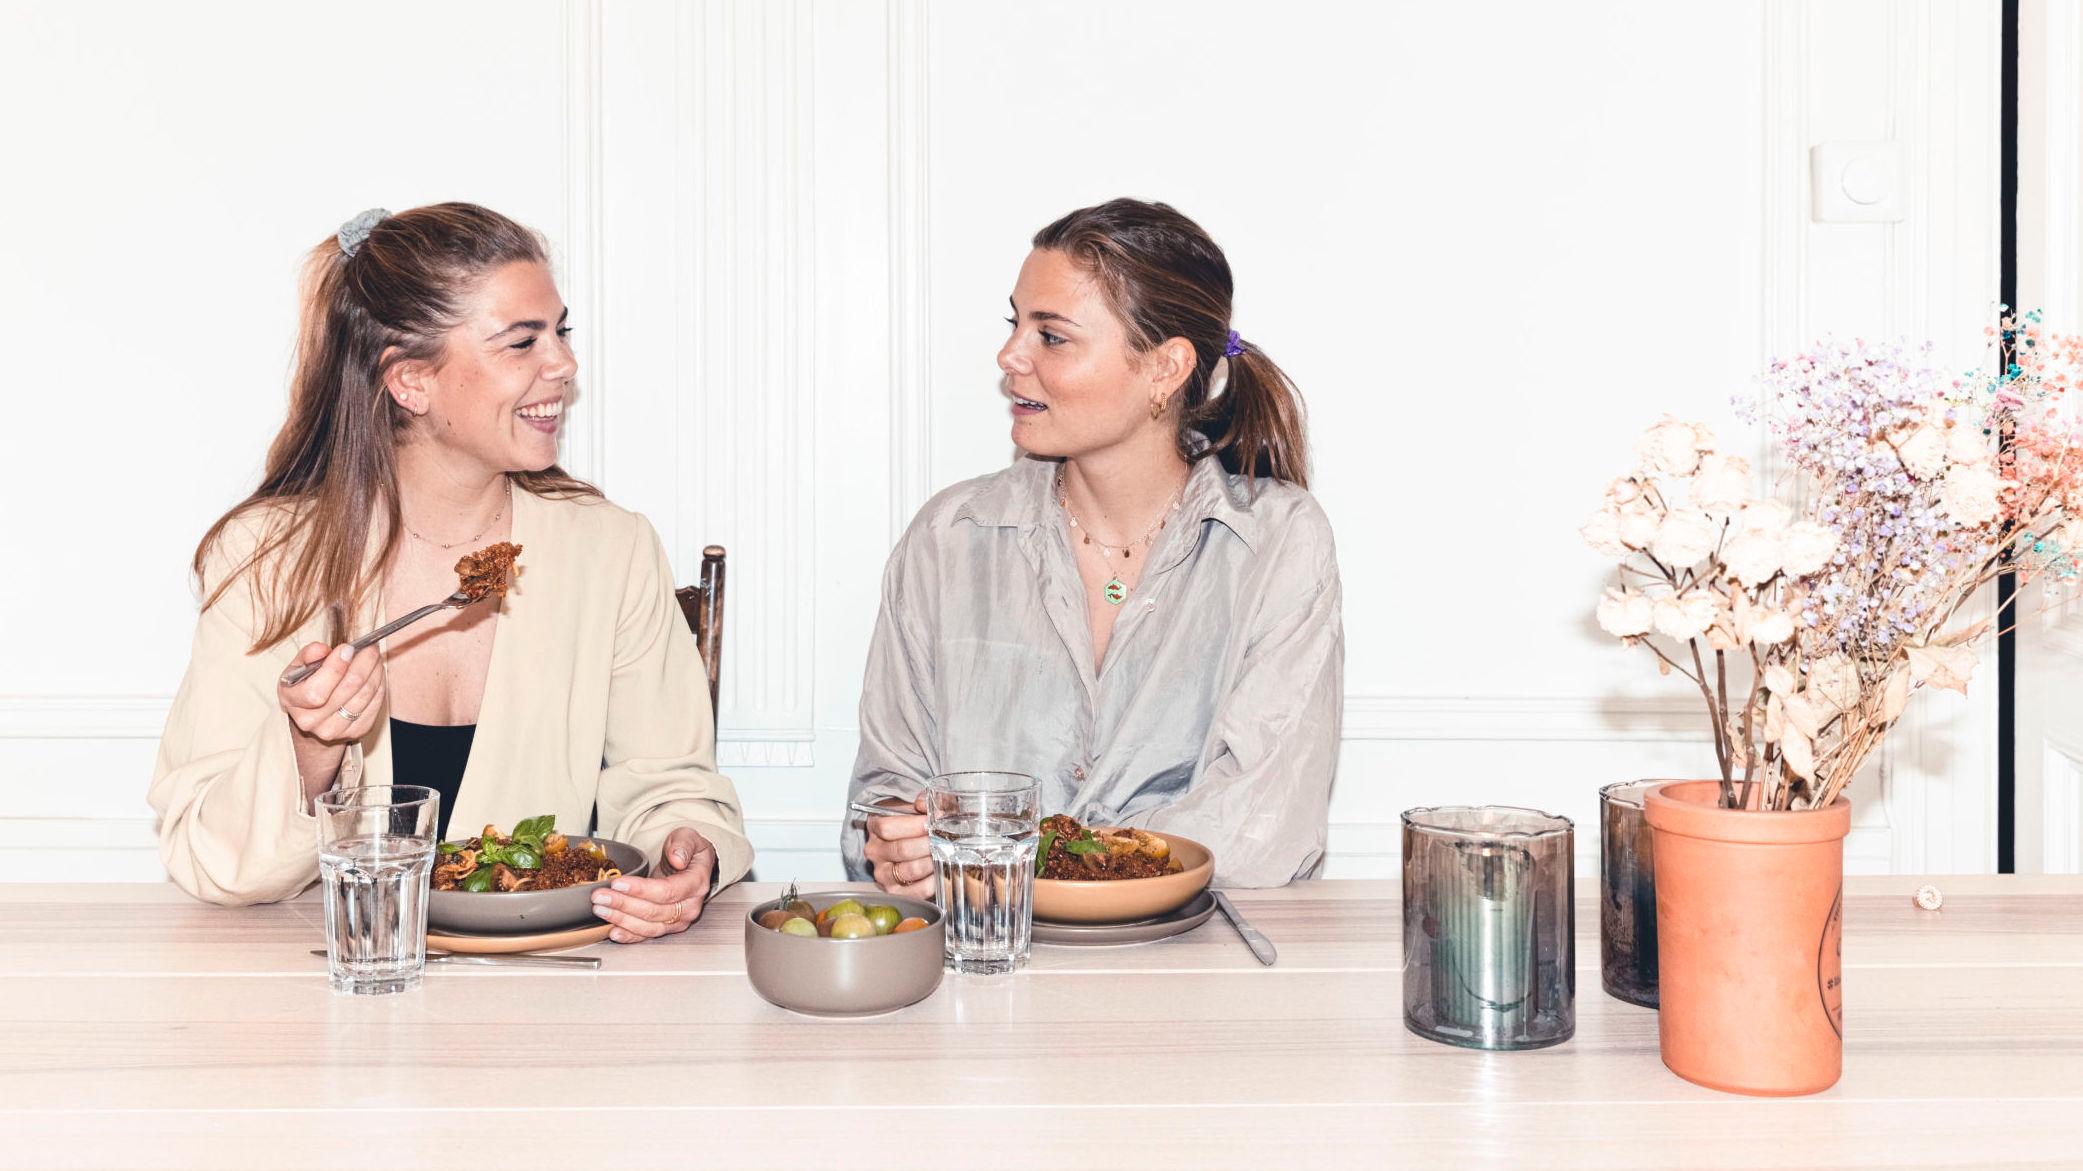 BROKKOLISPISERE: Søstrene Anette (til venstre) og Susanne Bastviken startet bloggen Radical Broccoli for å inspirere til hvordan man kan leve et grønnere liv. Siden har de gitt ut bok, startet en podkast og har i skrivende stund 22.000 følgere på Instagram. Foto: Krister Sørbø/VG